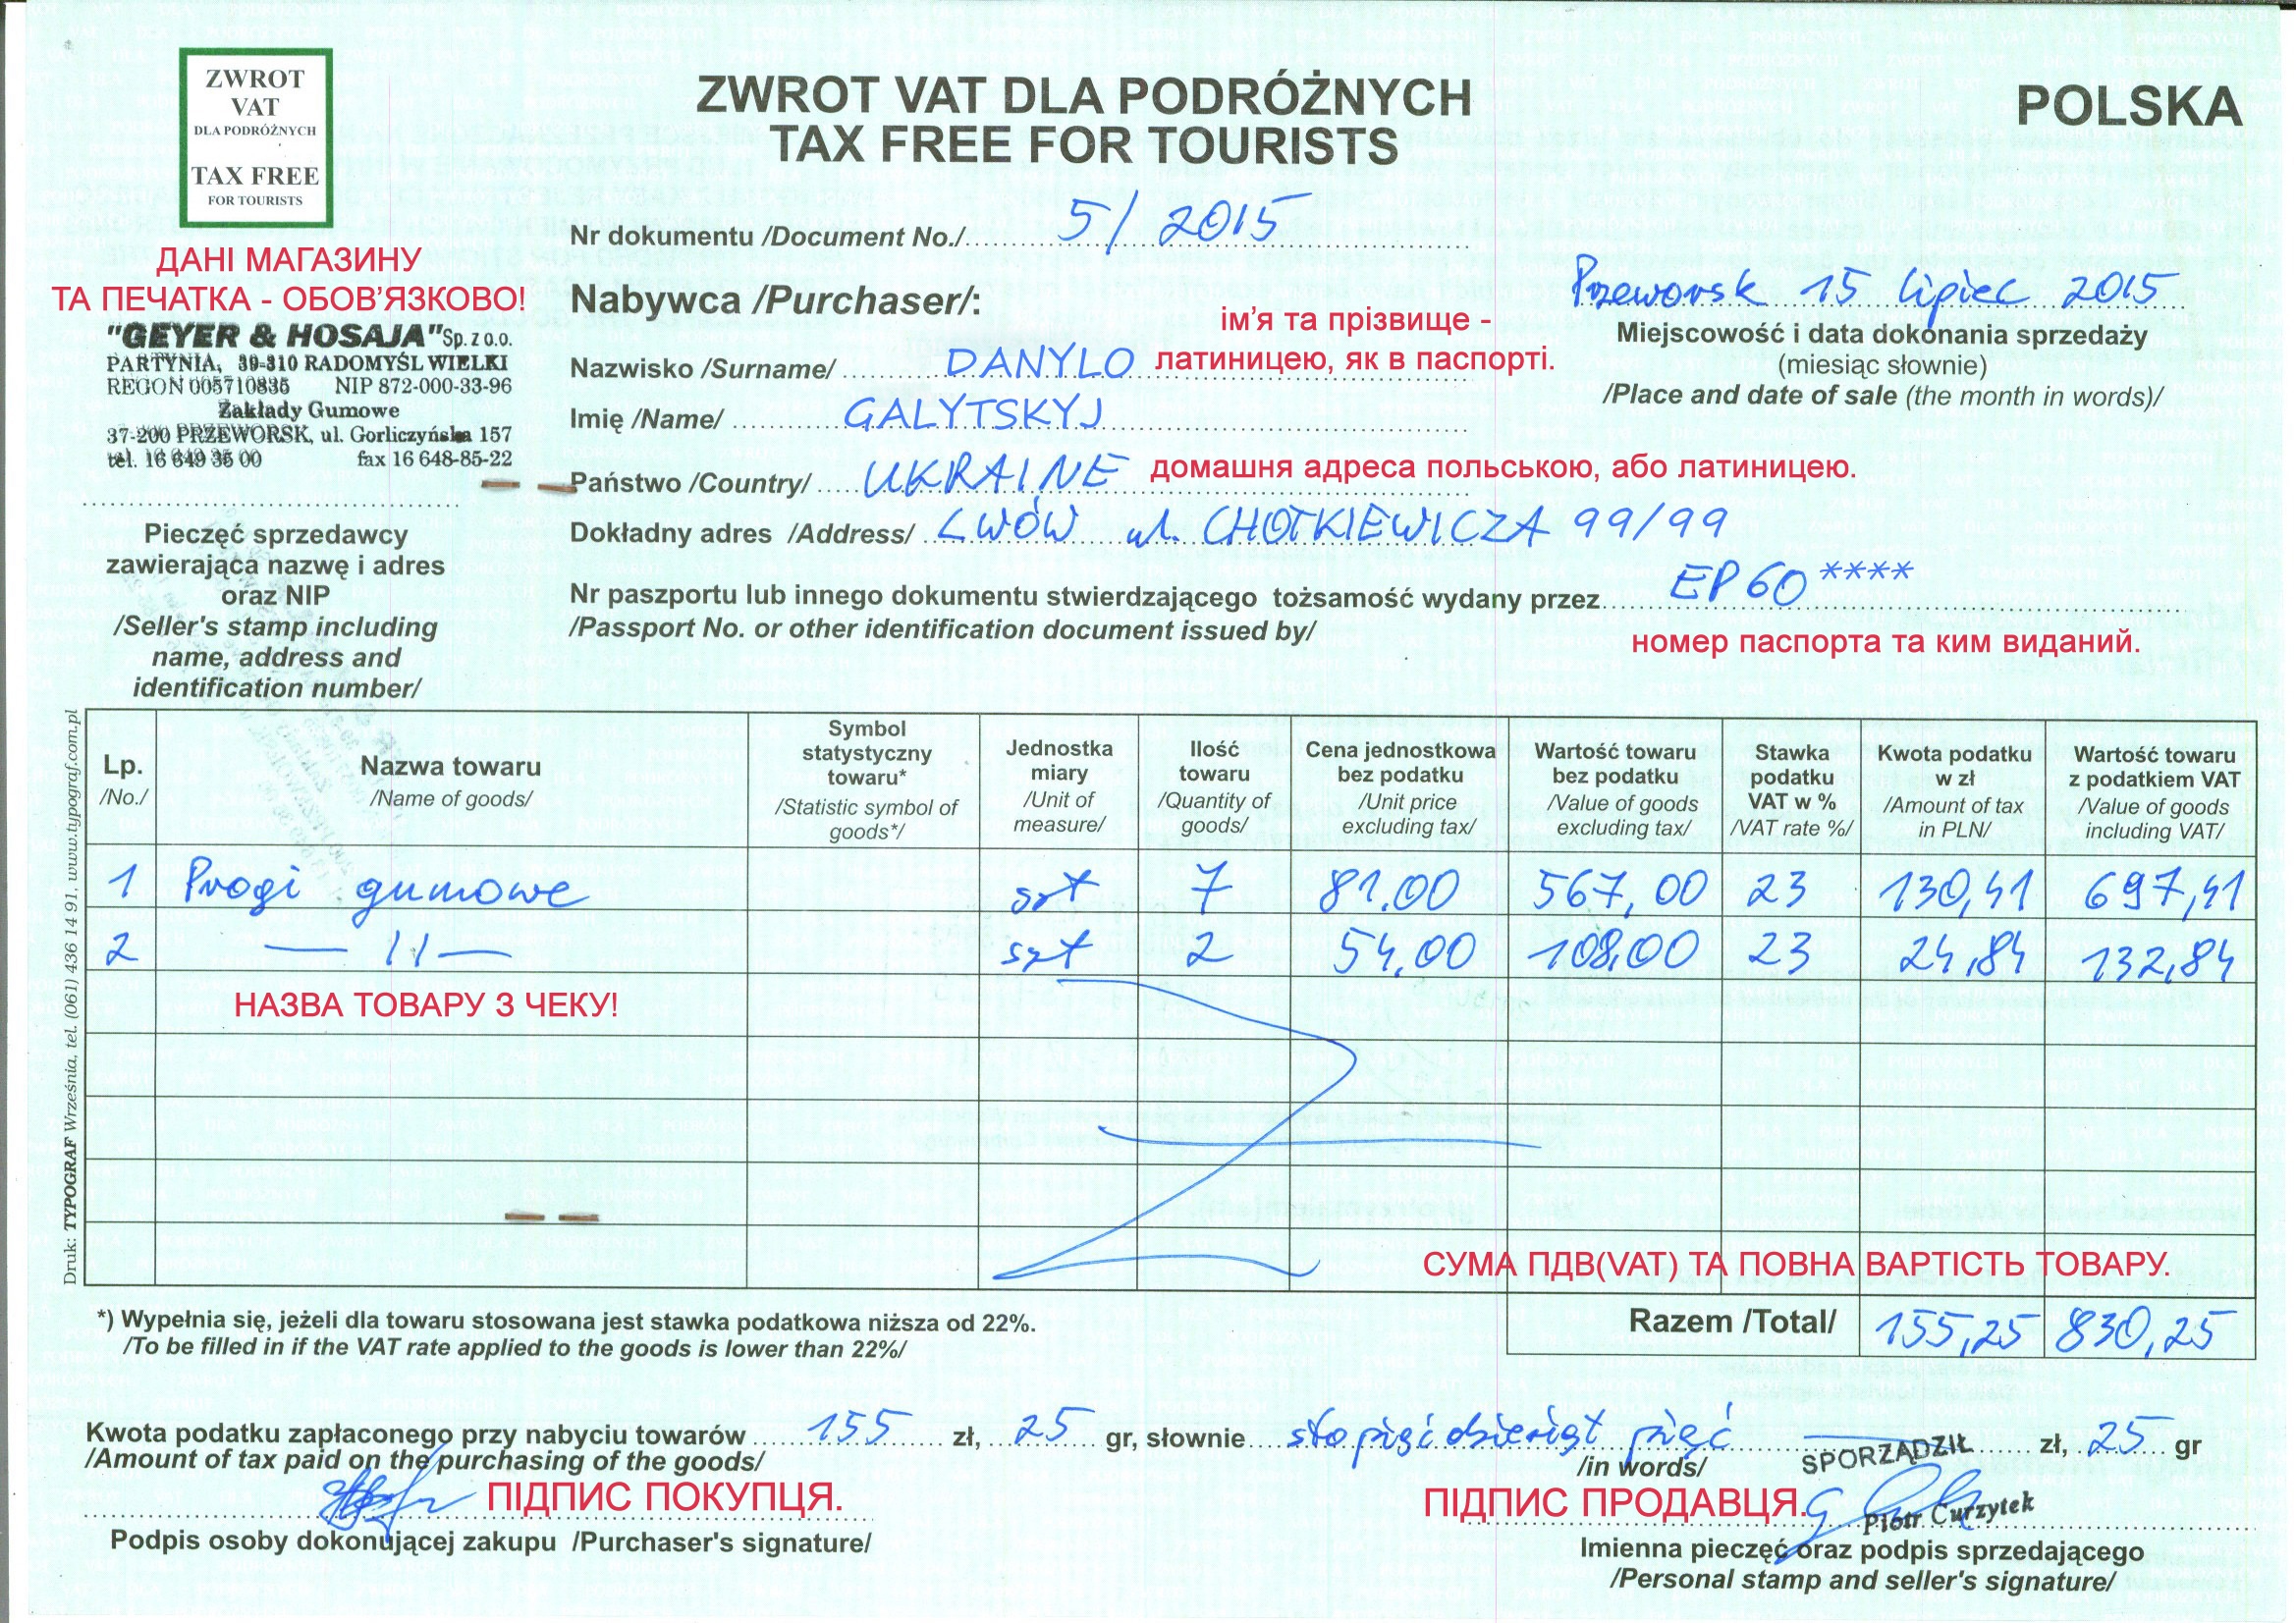 Заметьте также, что сумма налога VAT (НДС) при закупах в Польше соответствует сумме, которая указана в чеках, в том случае, когда возврат Tax Free (Такс Фри) происходит в самом магазине